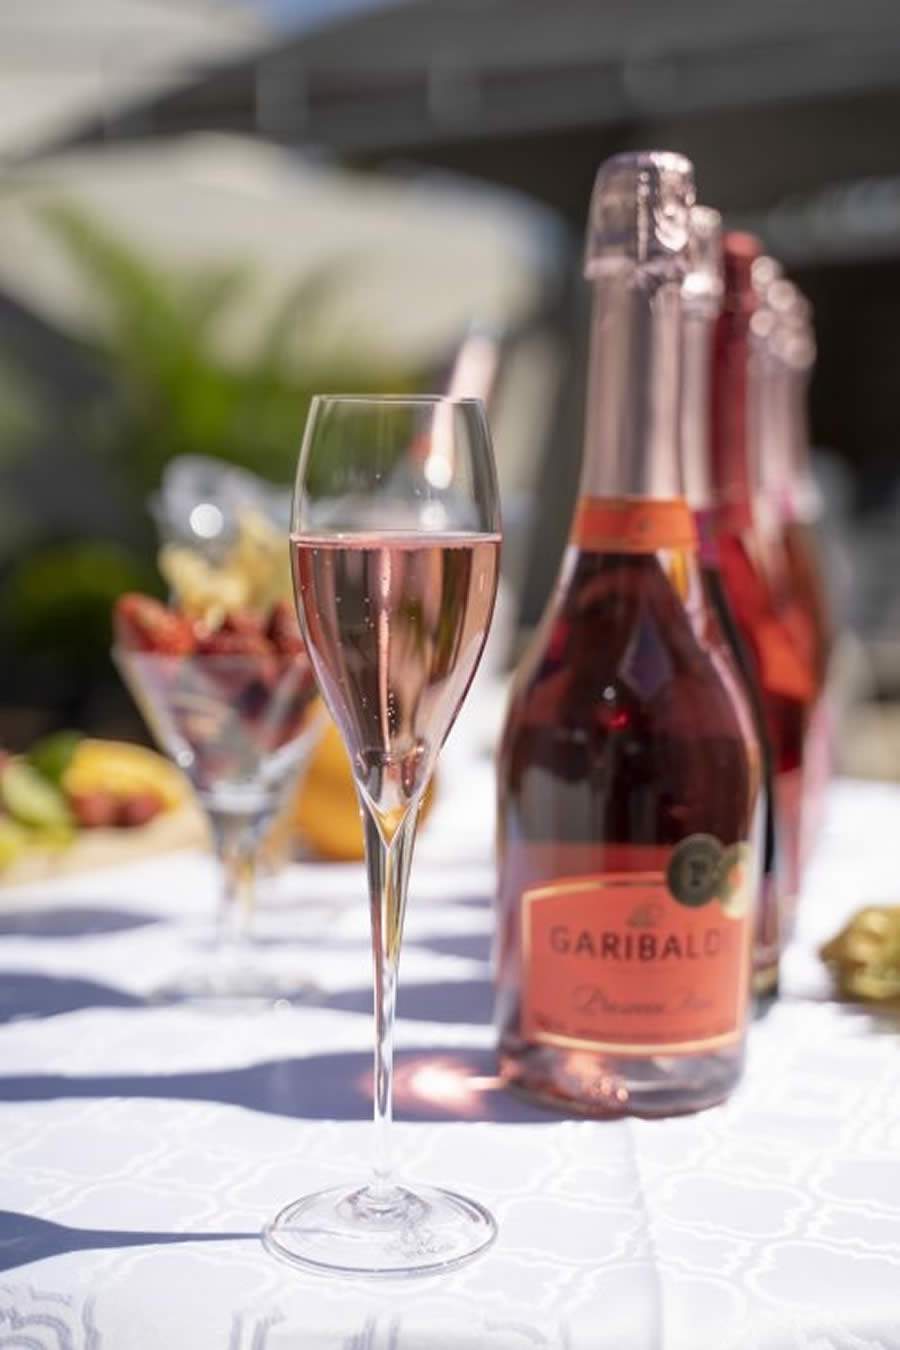 Espumante Garibaldi Prosecco Rosé Brut estreia no 5StarWines, guia de vinhos da Vinitaly